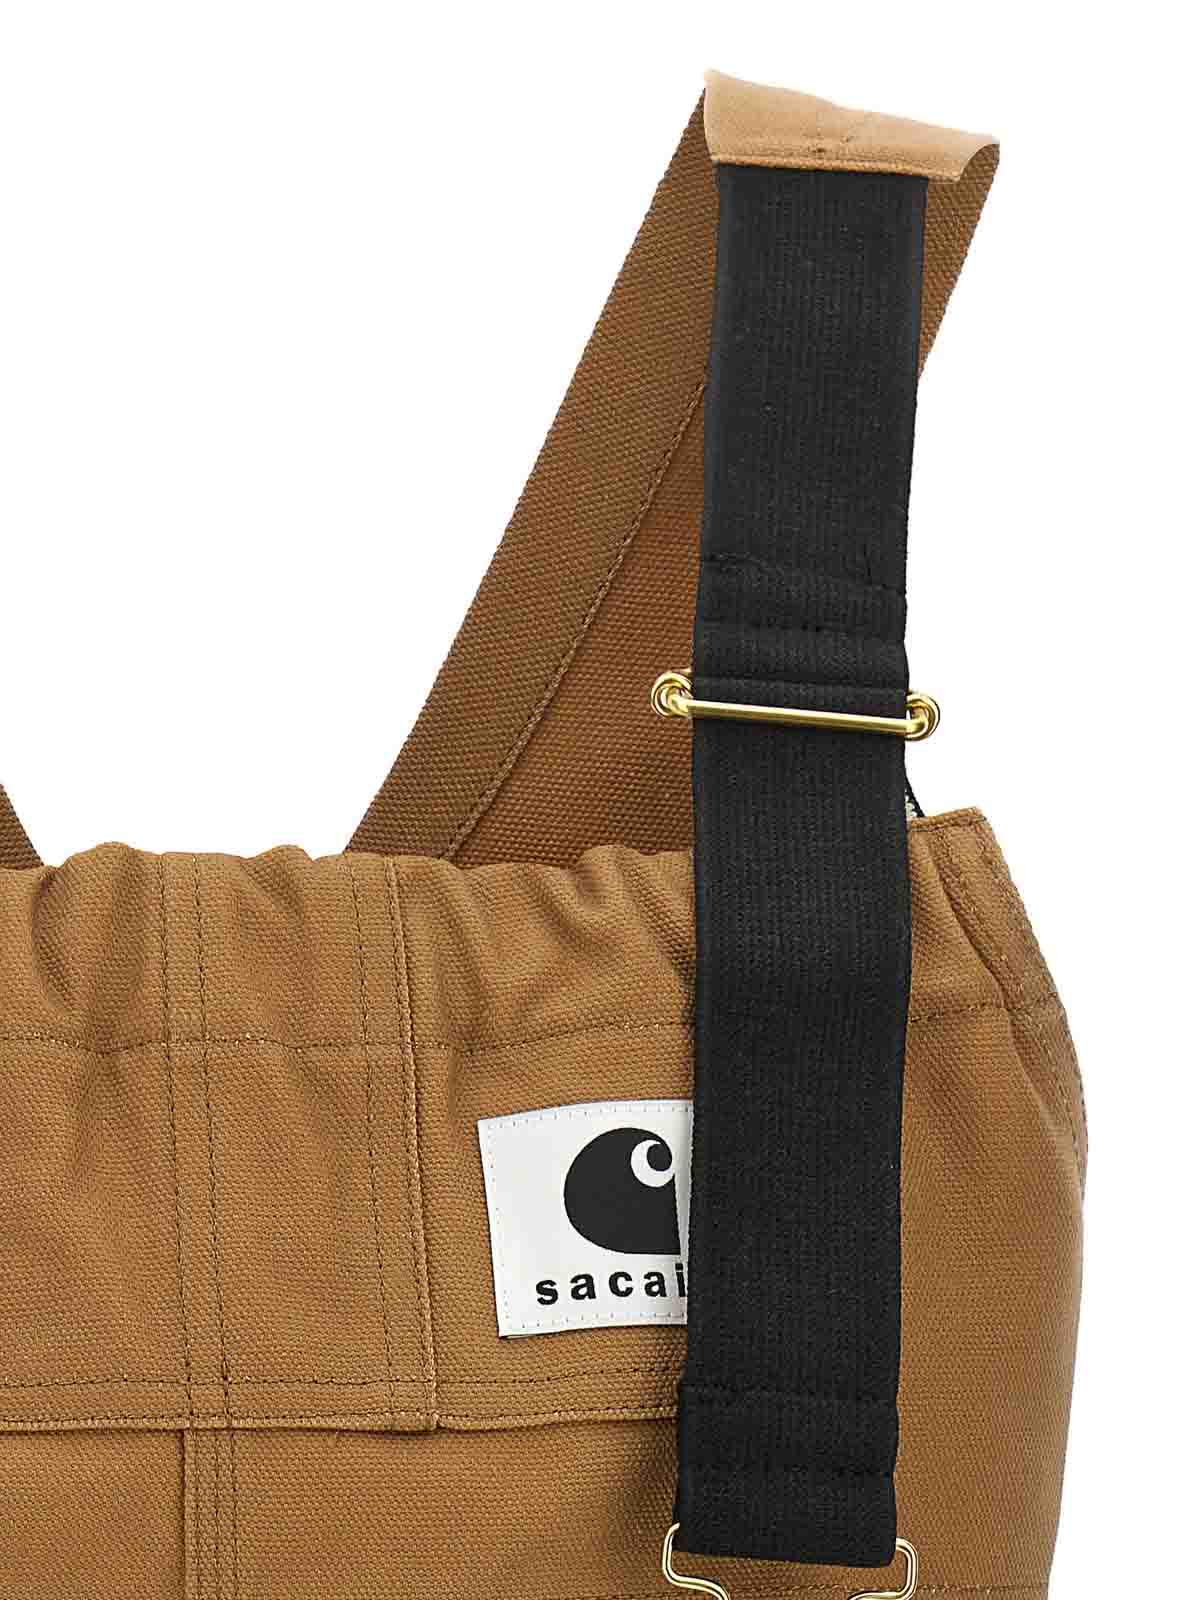 Sacai - Sacai X CARHARTT WIP POCKET BAG